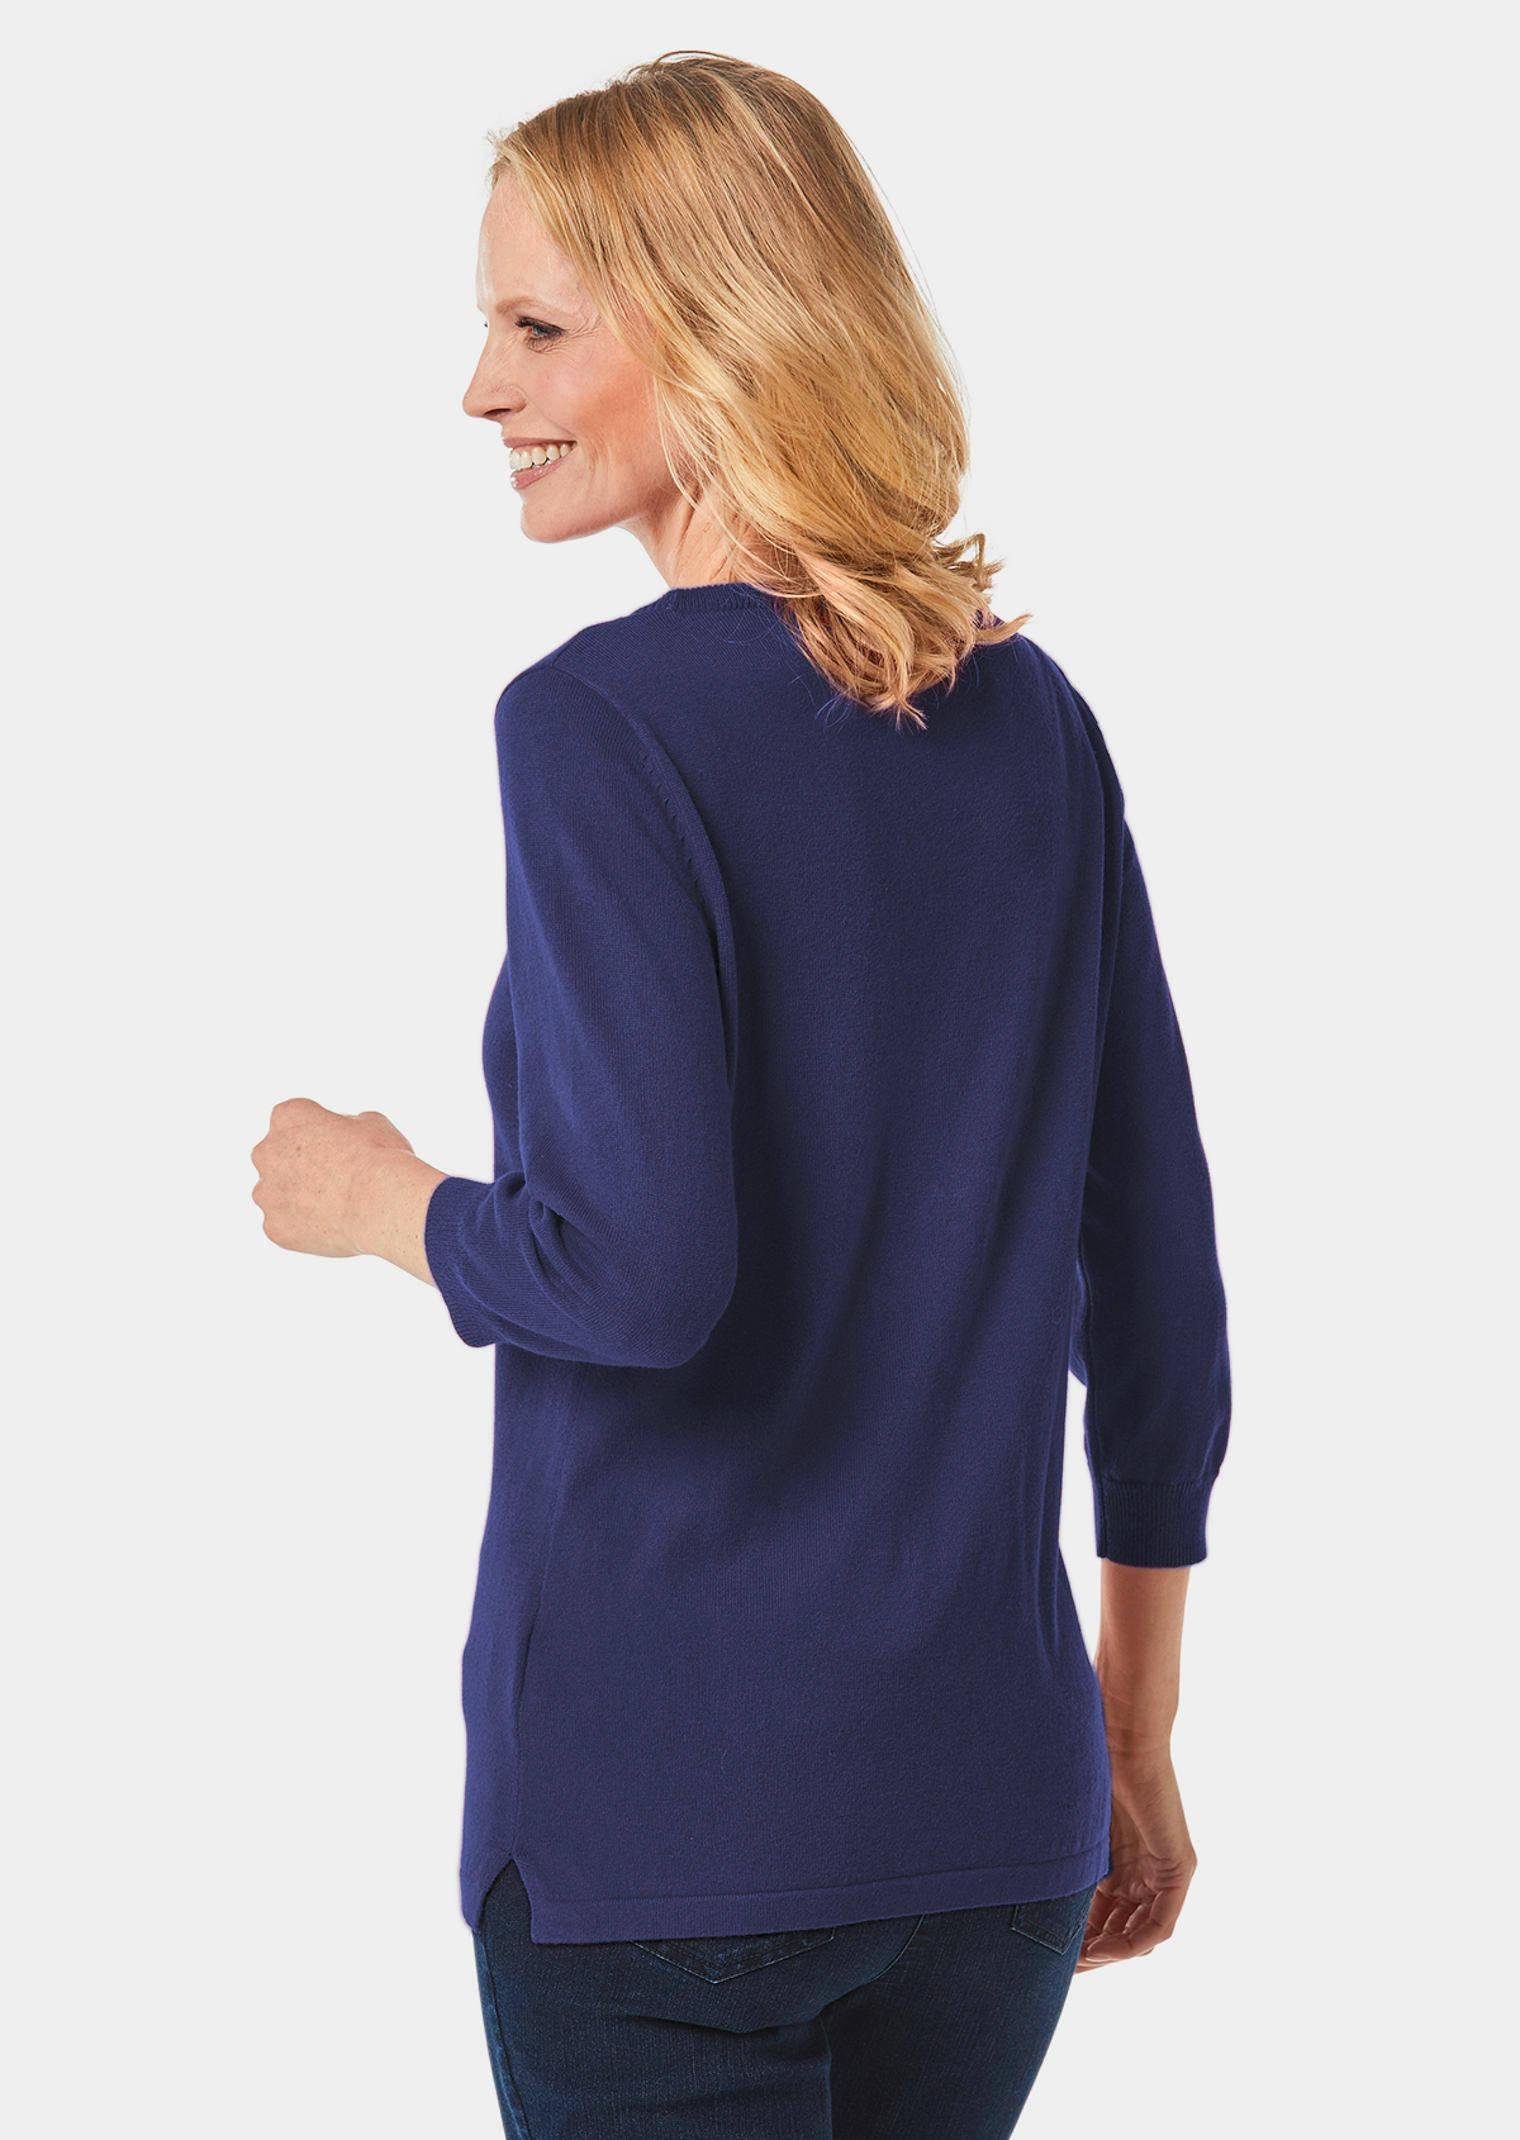 GOLDNER Garn Pullover Kurzgröße: hochwertigem Strickpullover tintenblau aus